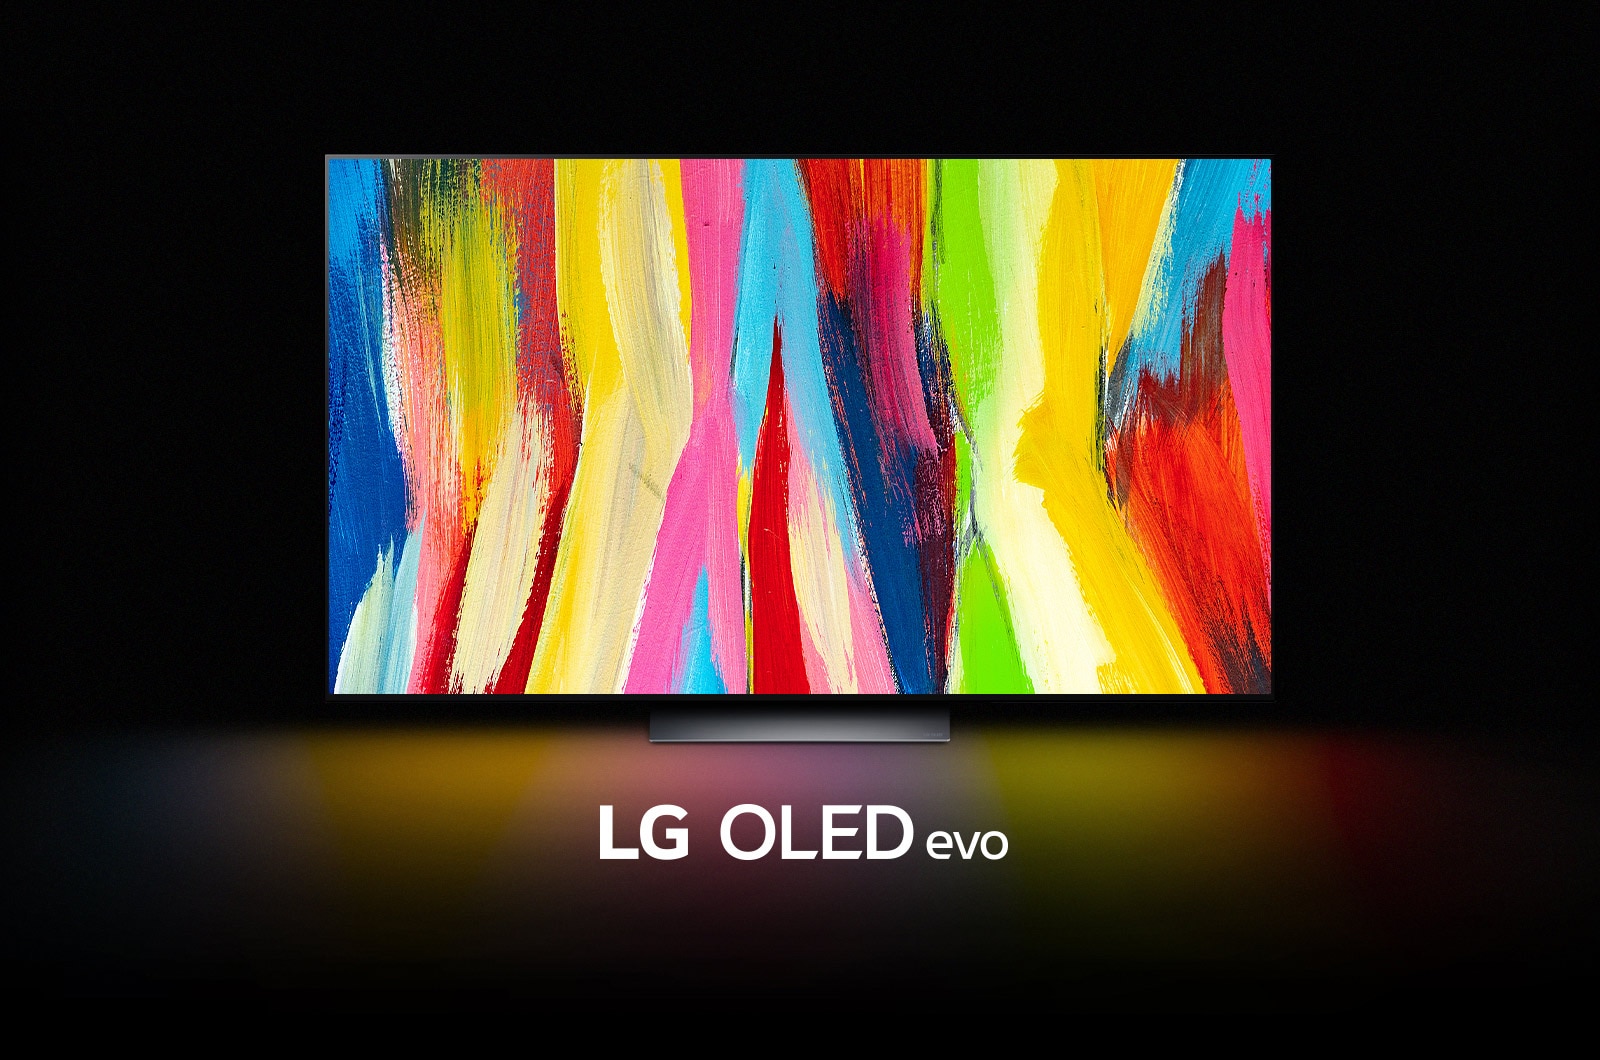 یک تلویزیون LG OLED C2 در اتاقی تاریک با یک اثر هنری انتزاعی دارای خطوط عمودی رنگارنگ در نمایشگر آن و عبارت «LG OLED evo» در زیر آن قرار گرفته است.